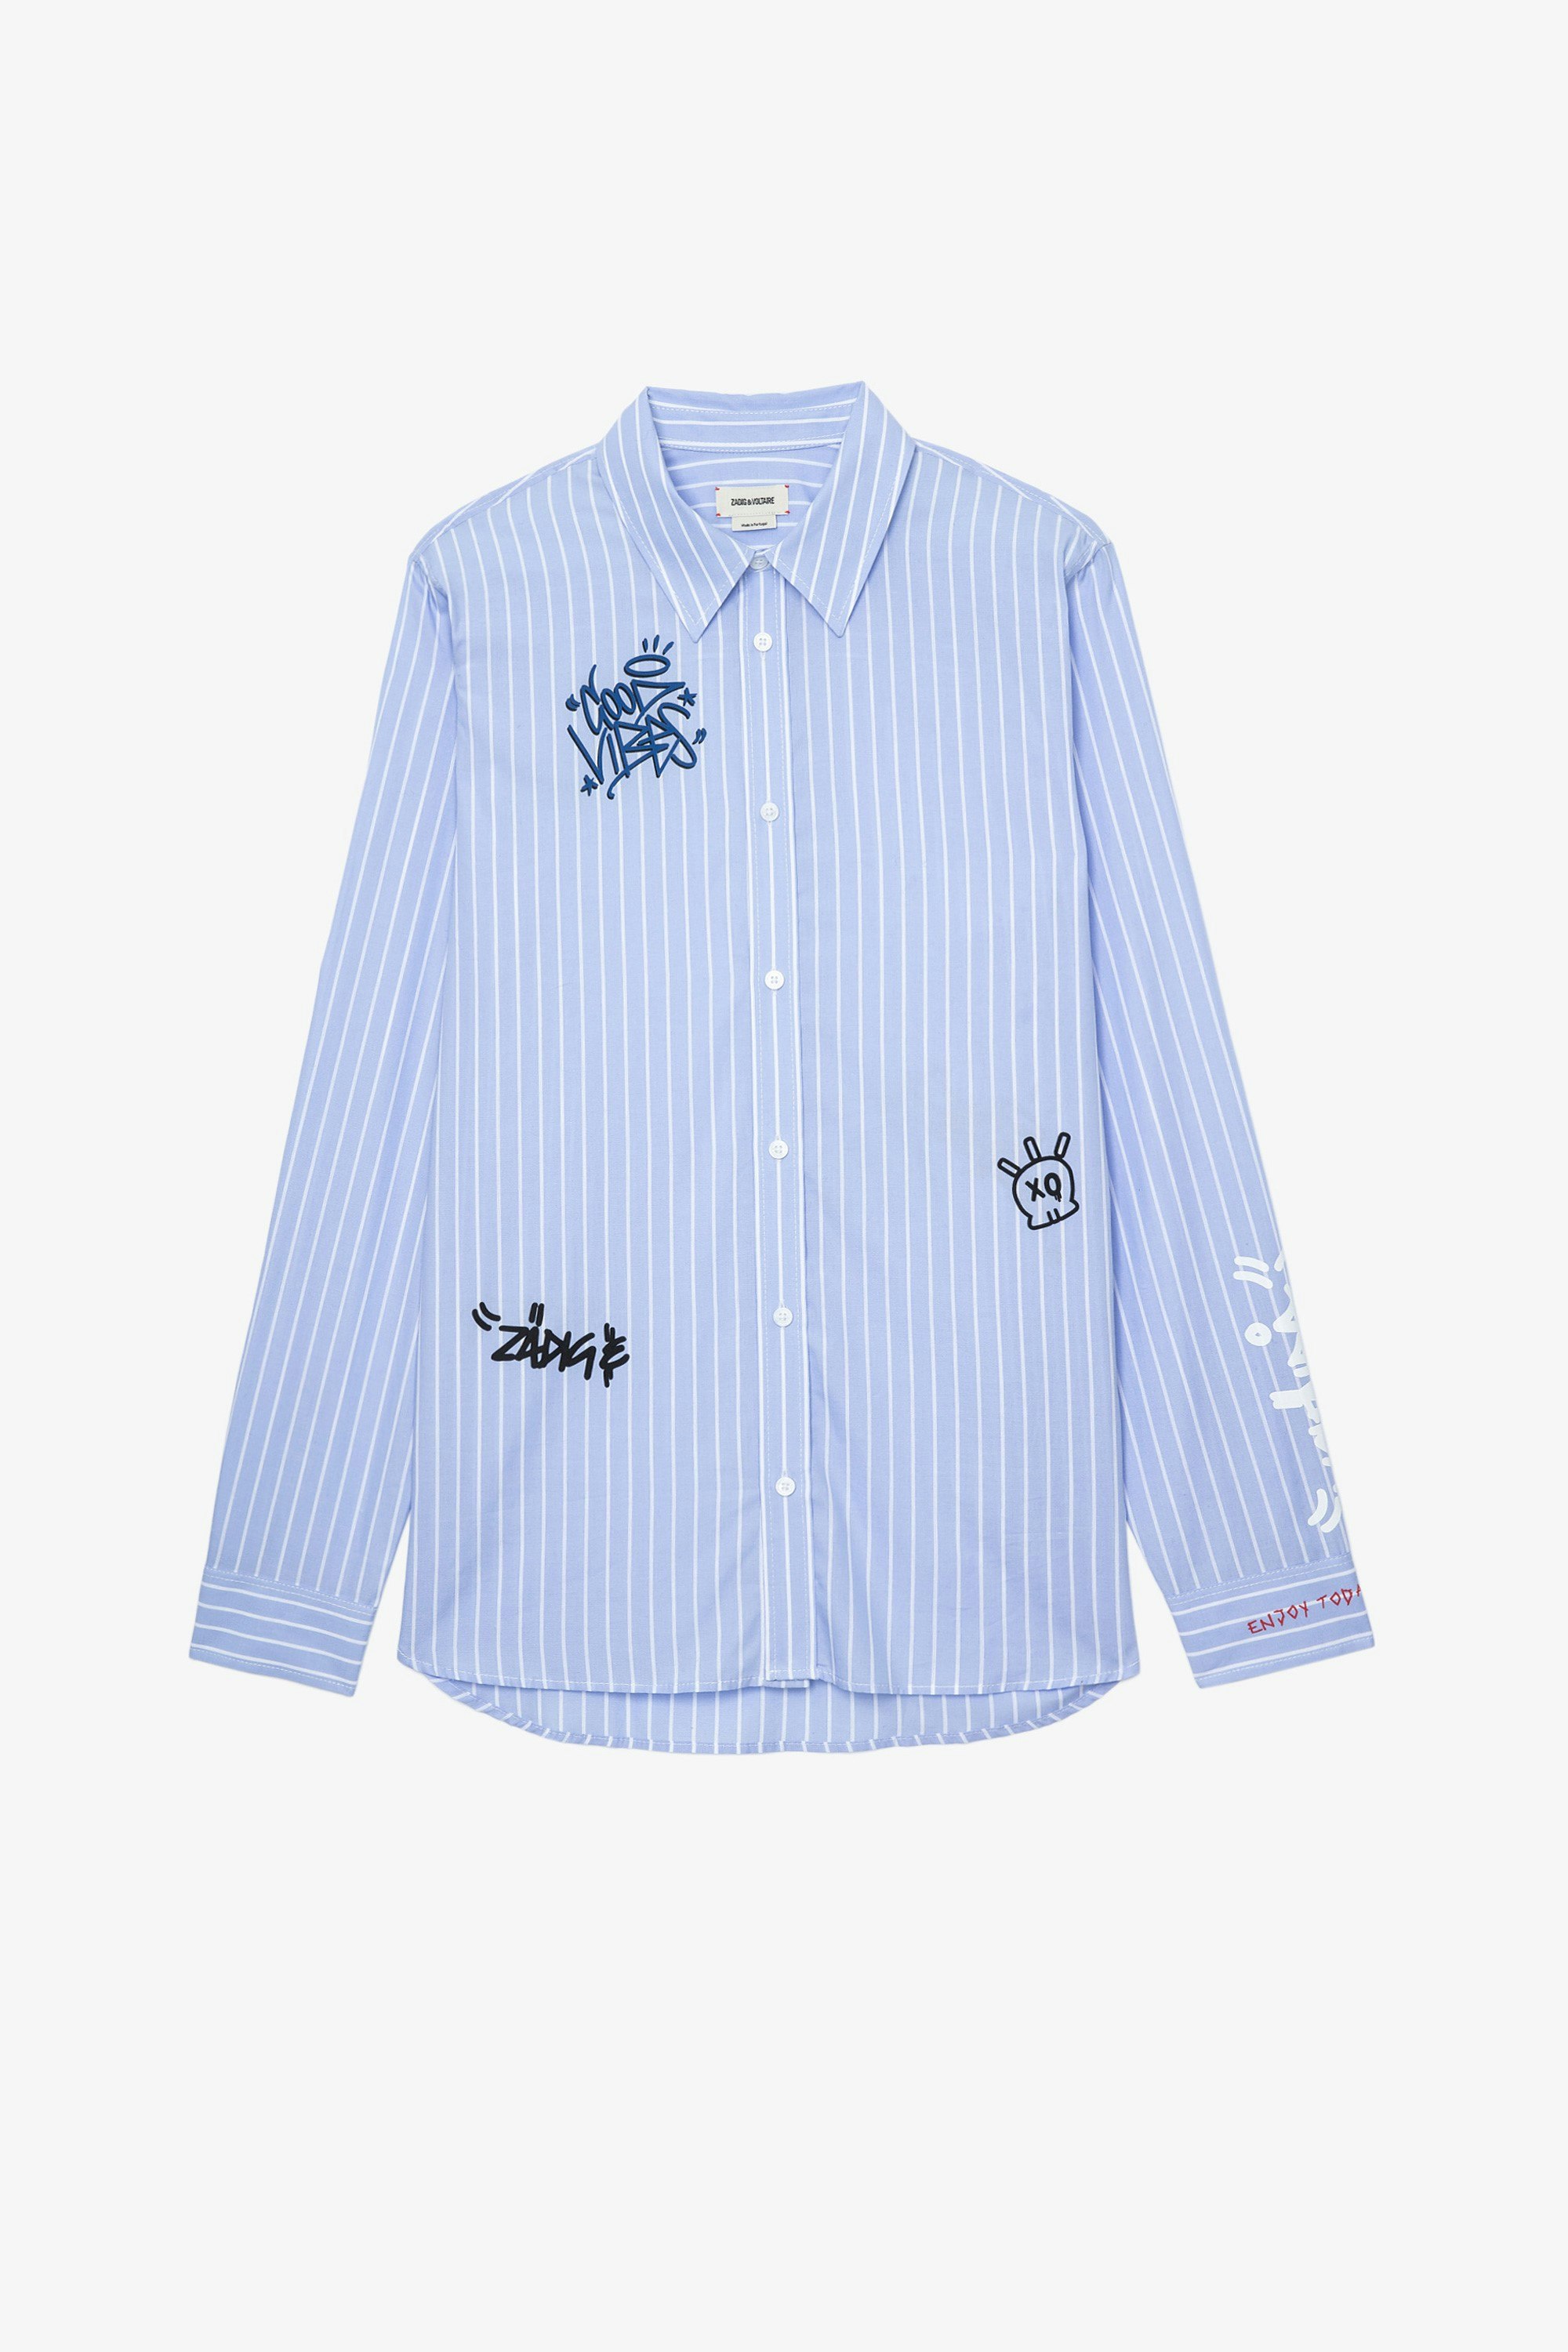 Stan シャツ Men’s light blue cotton poplin shirt with street art motifs